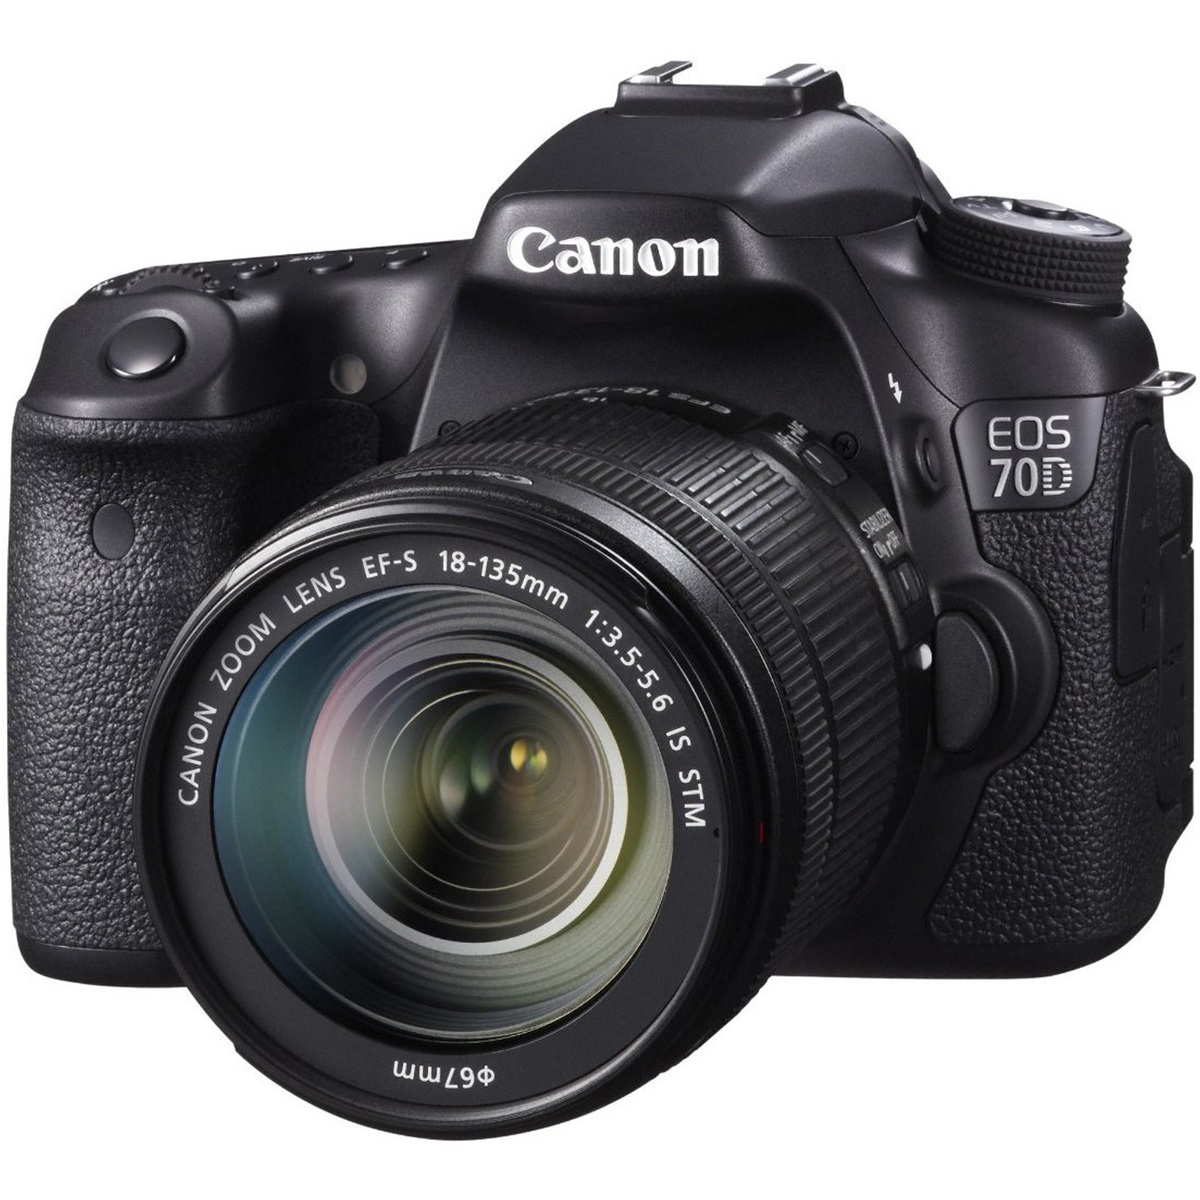 Camera arabia in dslr saudi price canon Canon EOS